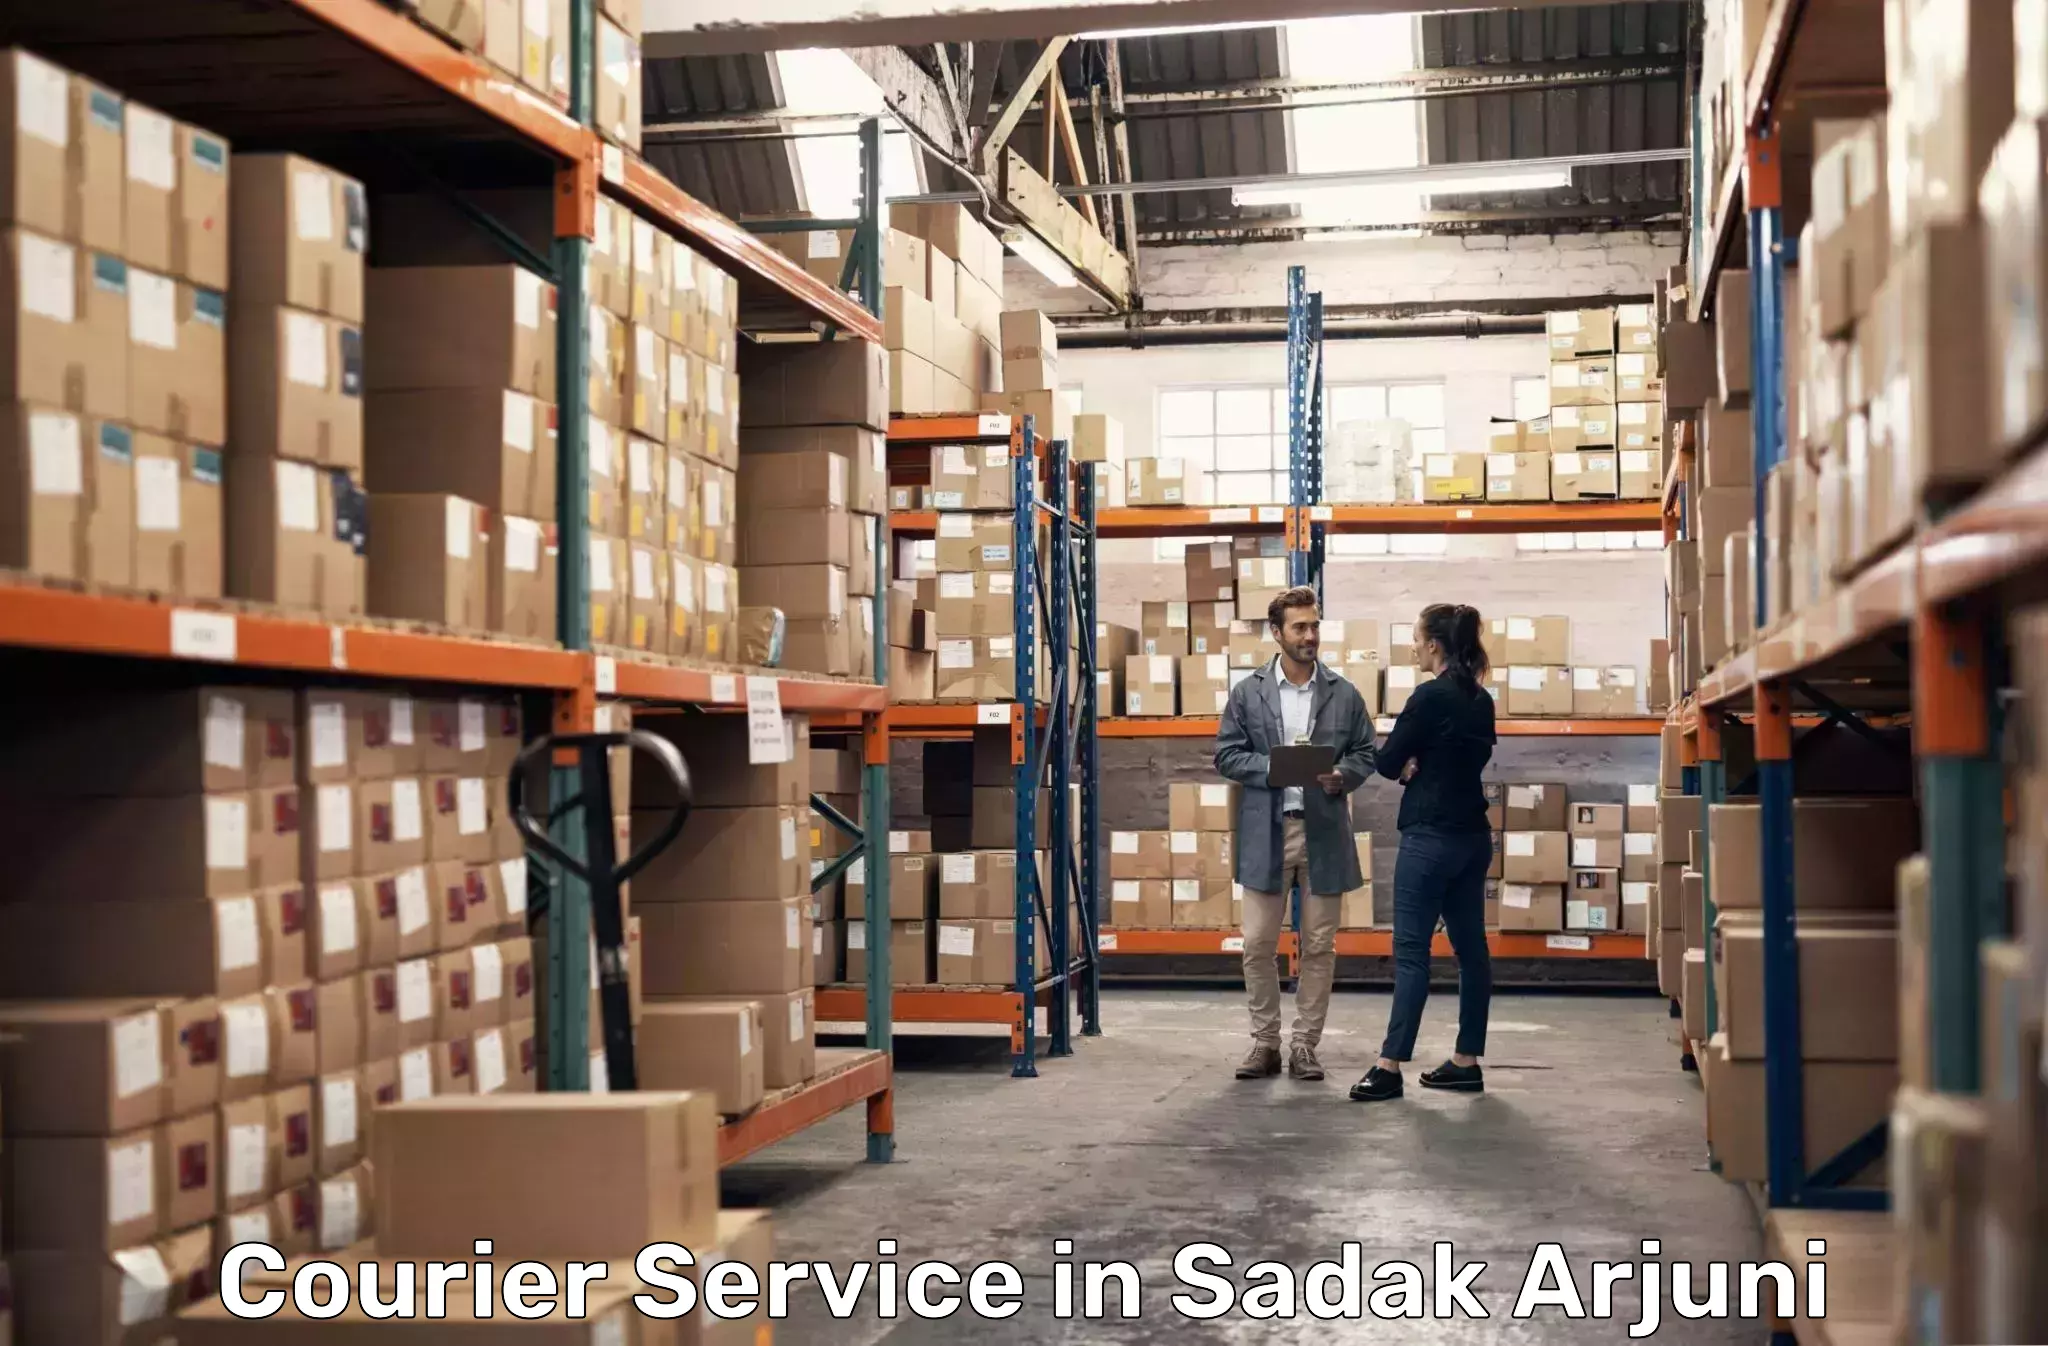 Advanced delivery solutions in Sadak Arjuni